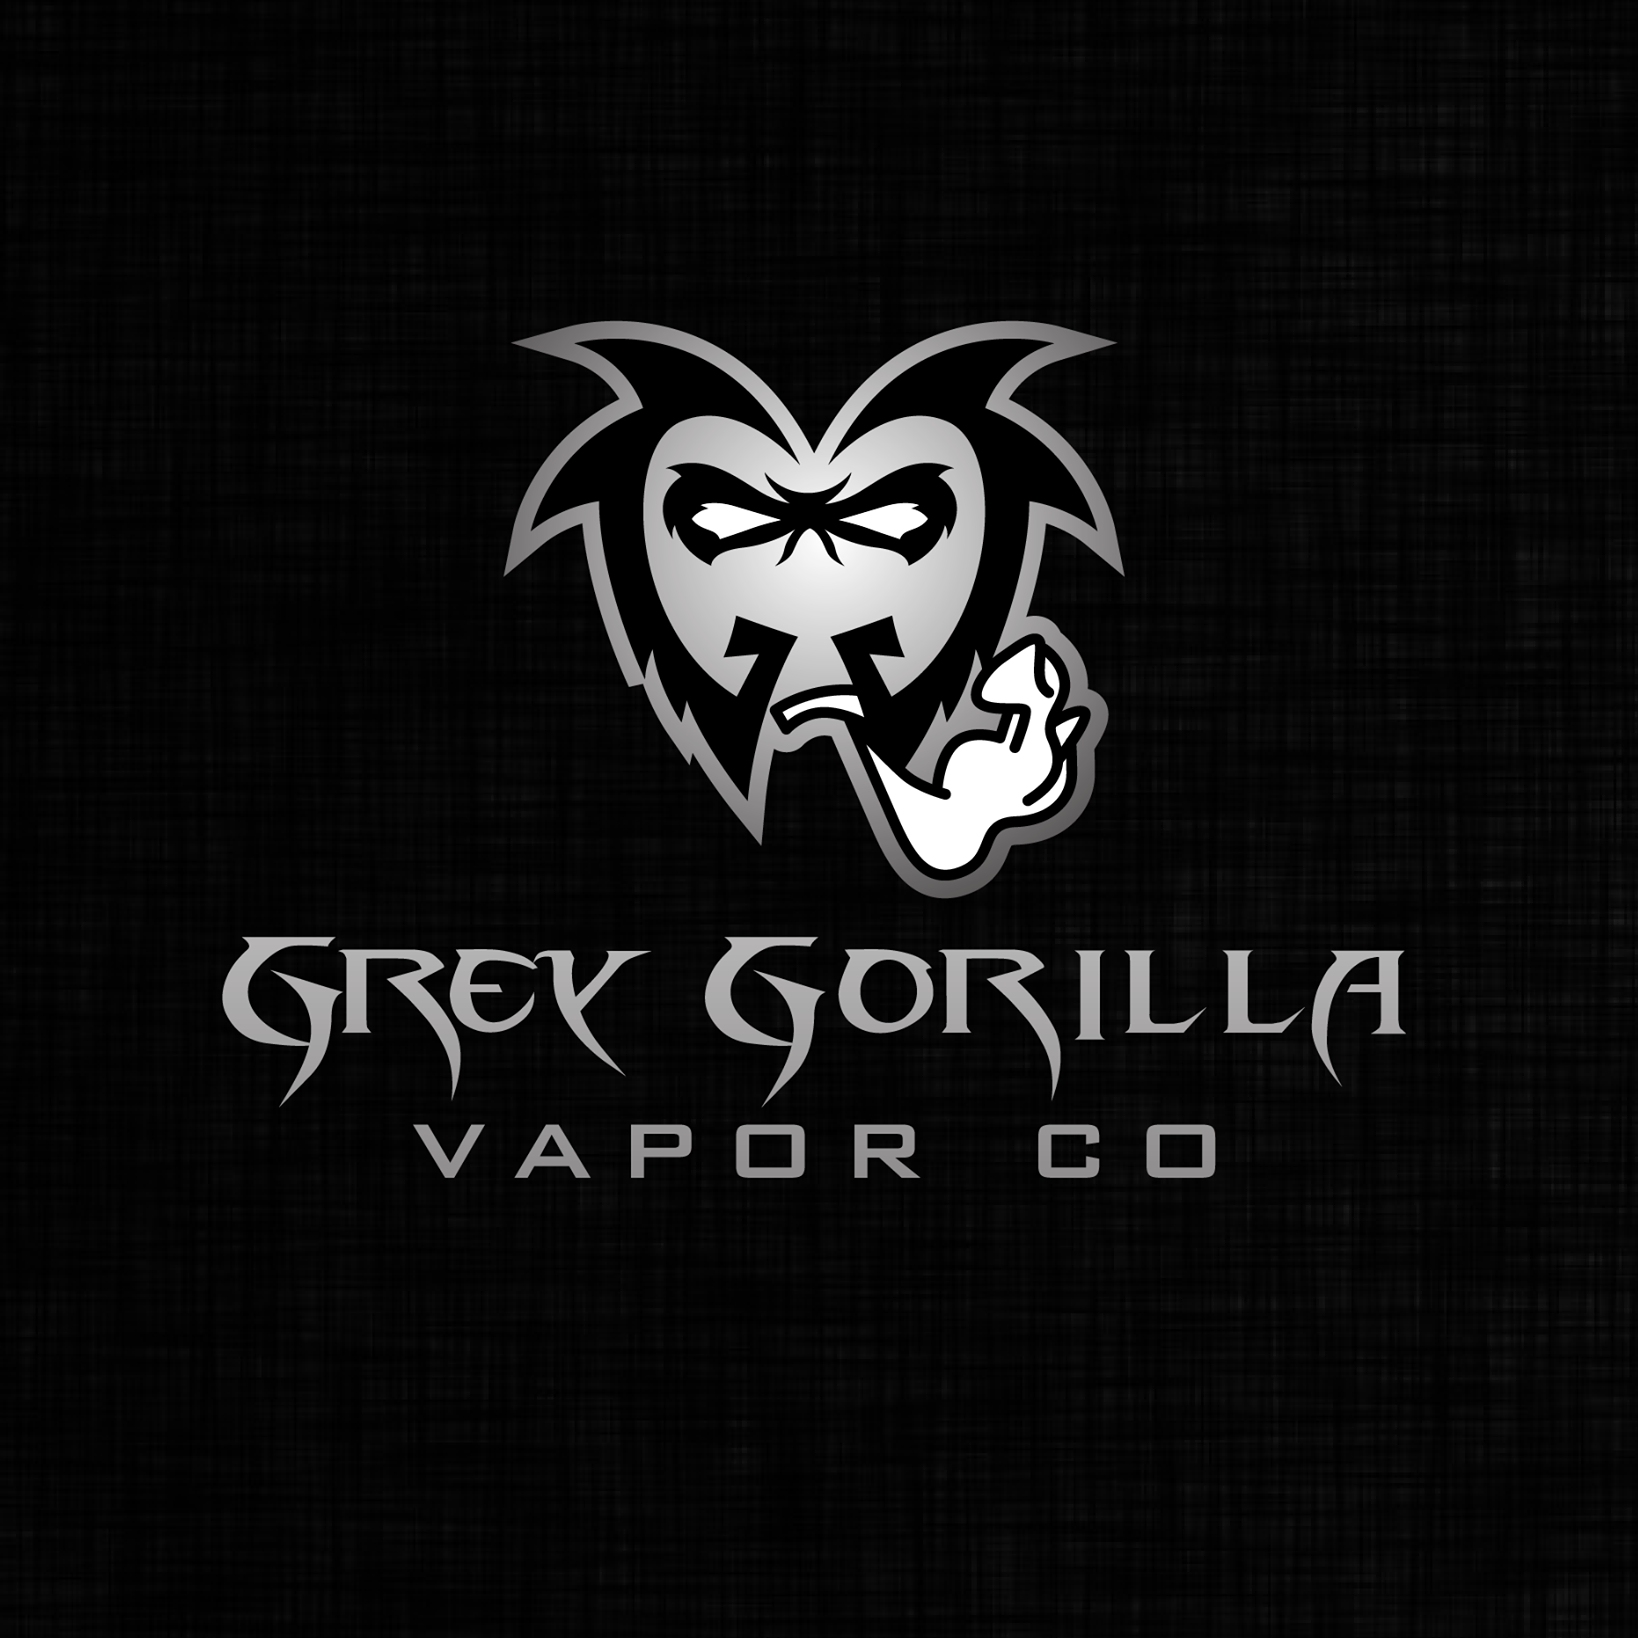 Logo of GreyGorilla Vapor Co